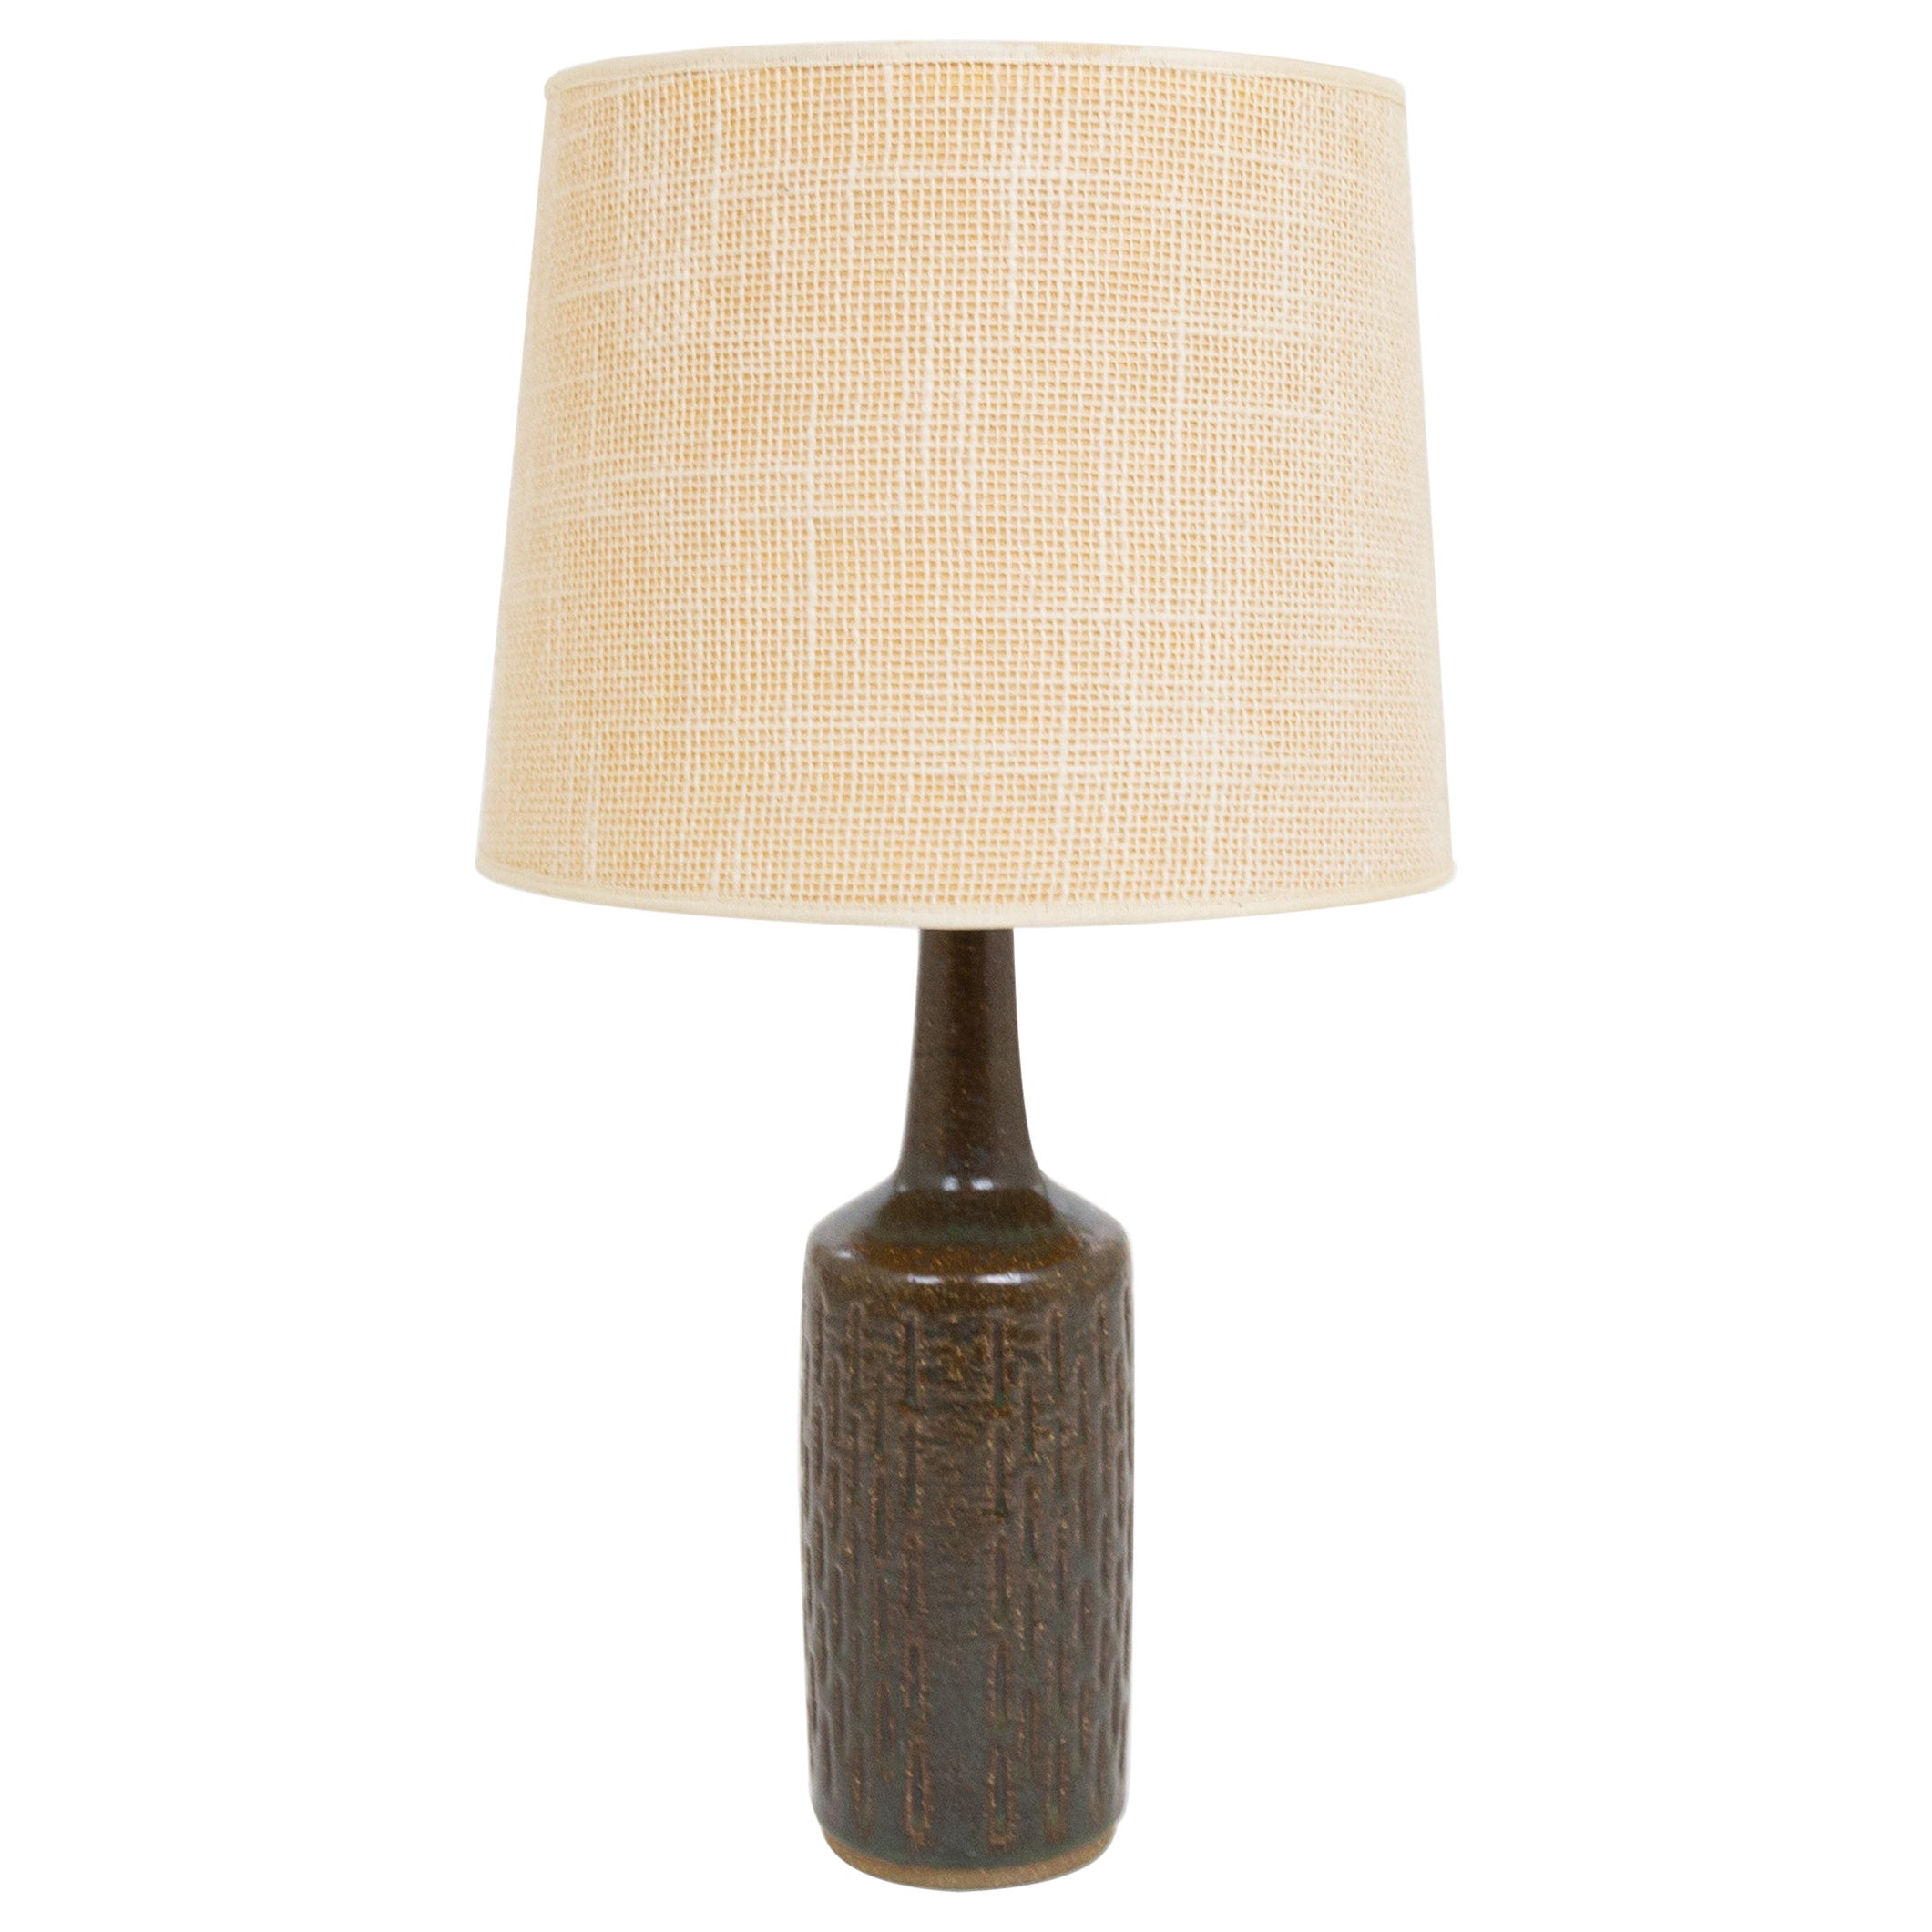 Brown DL/30 table lamp by Linnemann-Schmidt for Palshus, 1960s For Sale